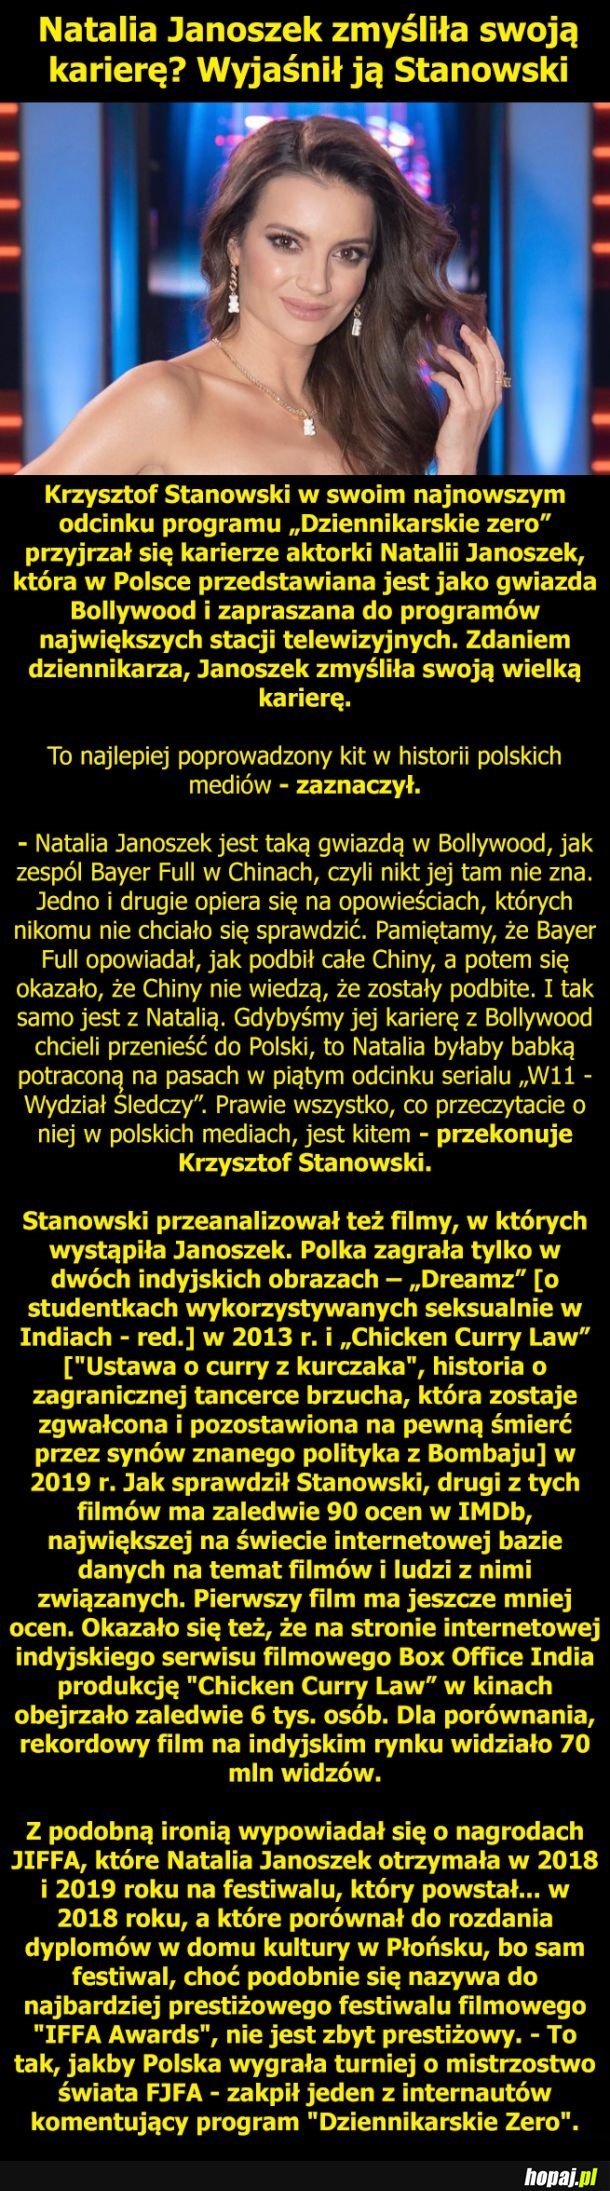 Natalia Janoszek wyjaśniona